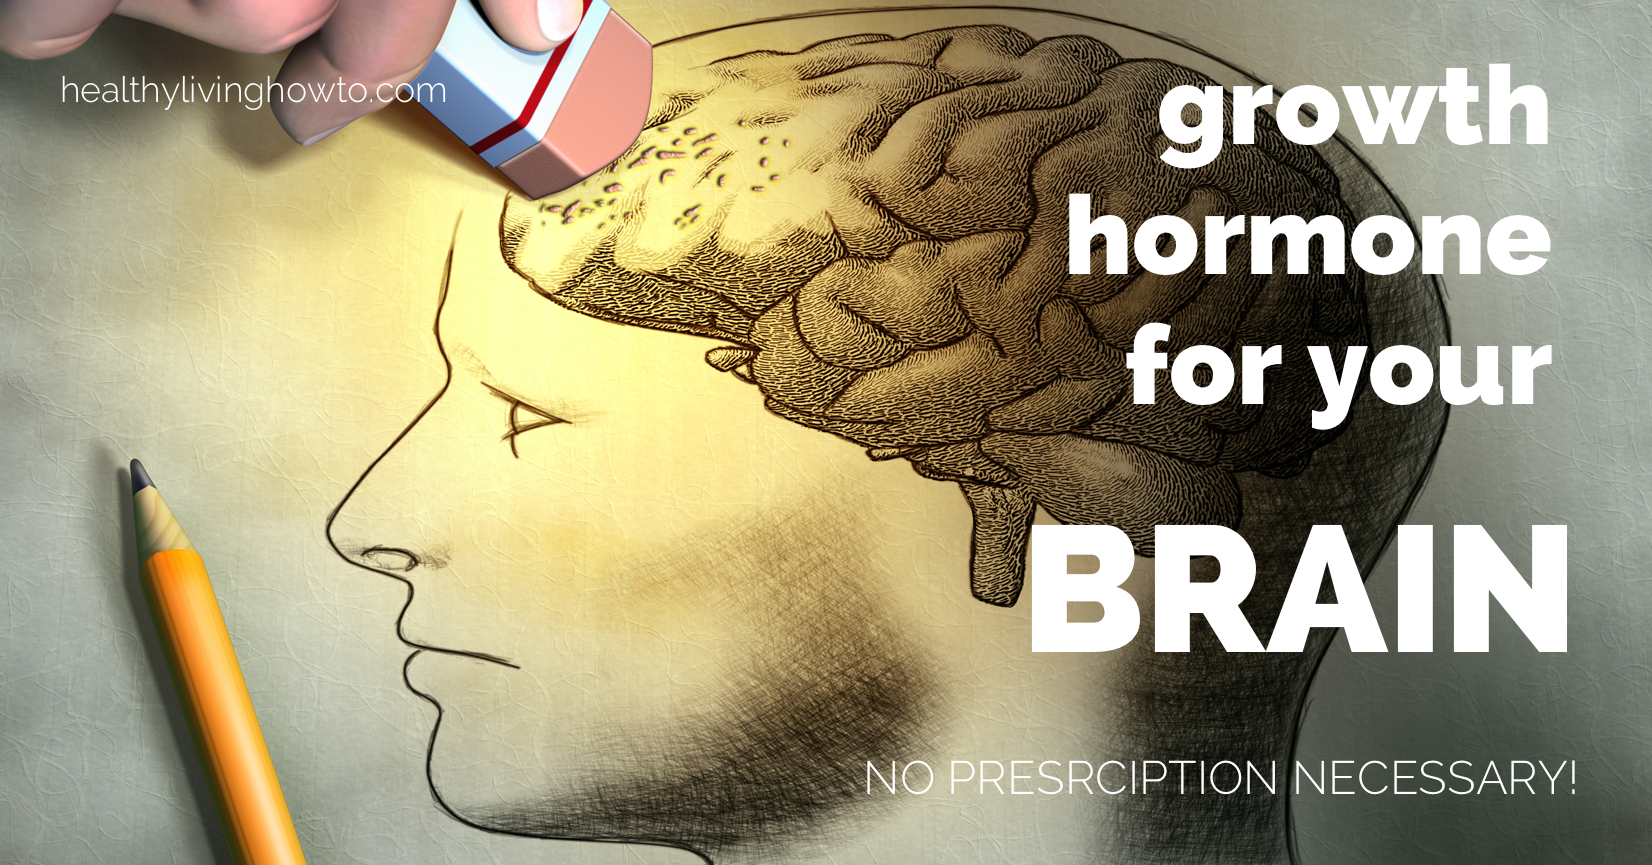 Growth Hormone For Your Brain. No Prescription Necessary! | healthylivinghowto.com